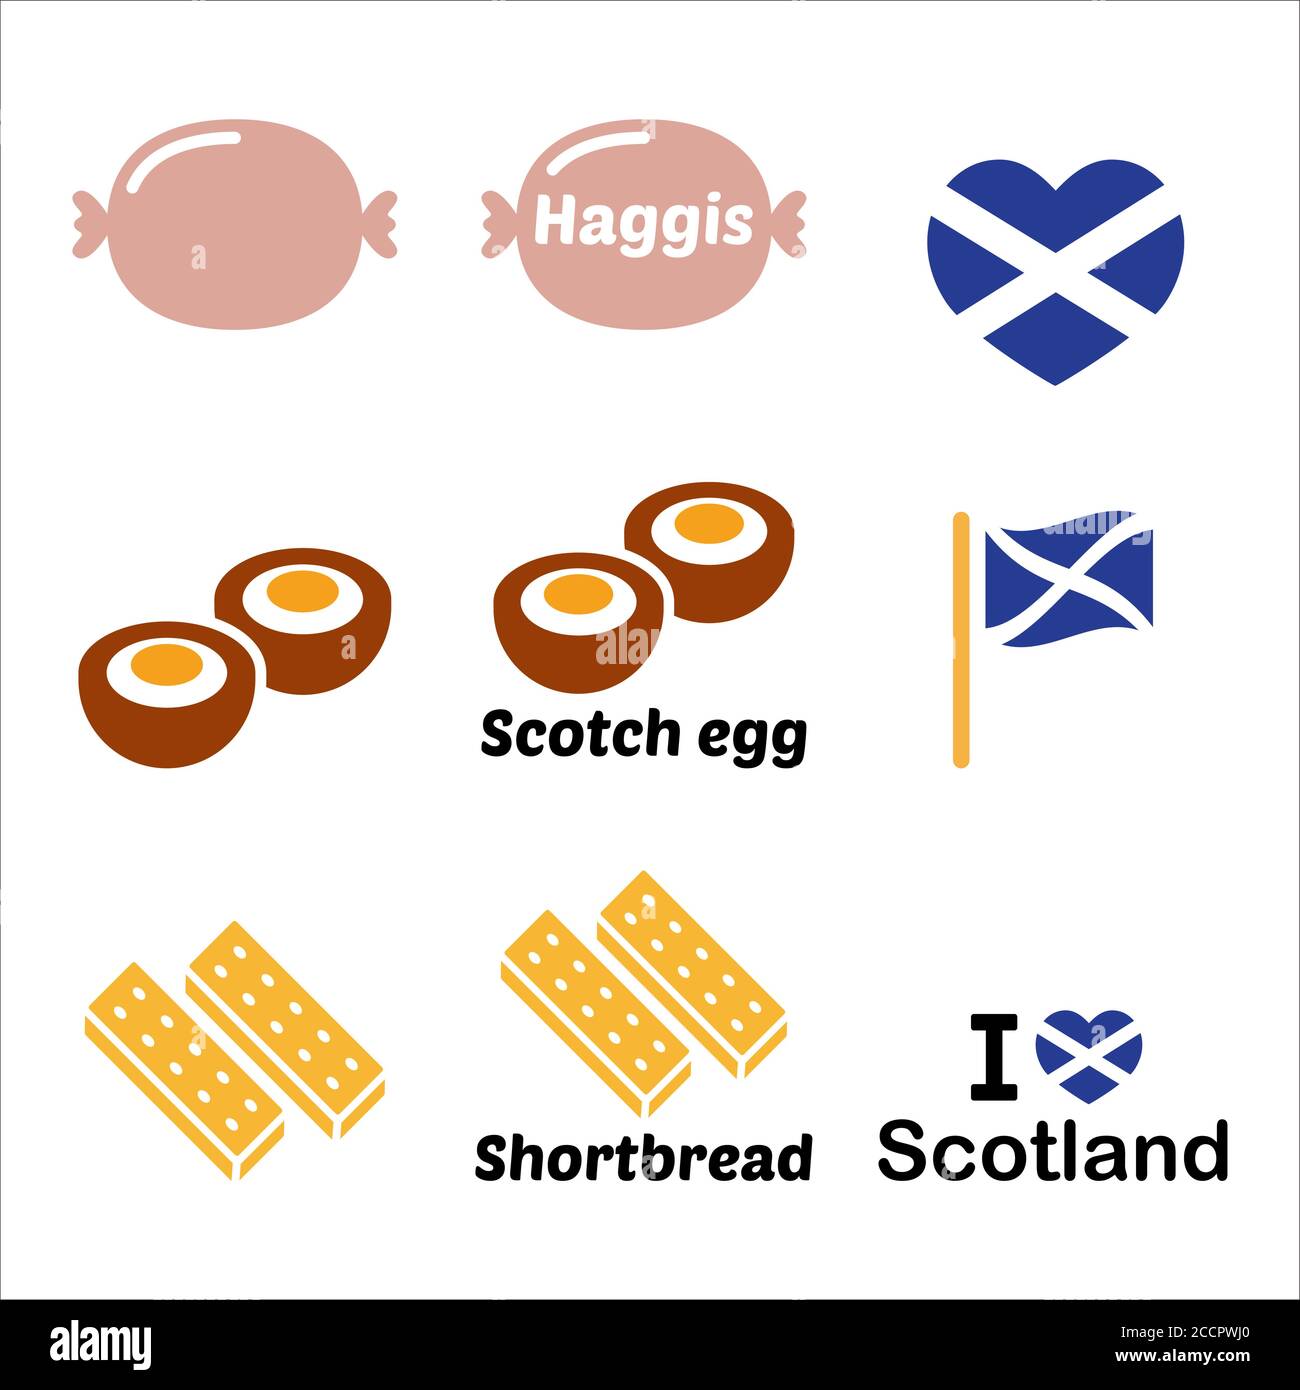 Scottish food - Haggis, œuf de Scotch, assortiment d'icônes de sablés. Cuisine traditionnelle écossaise Illustration de Vecteur